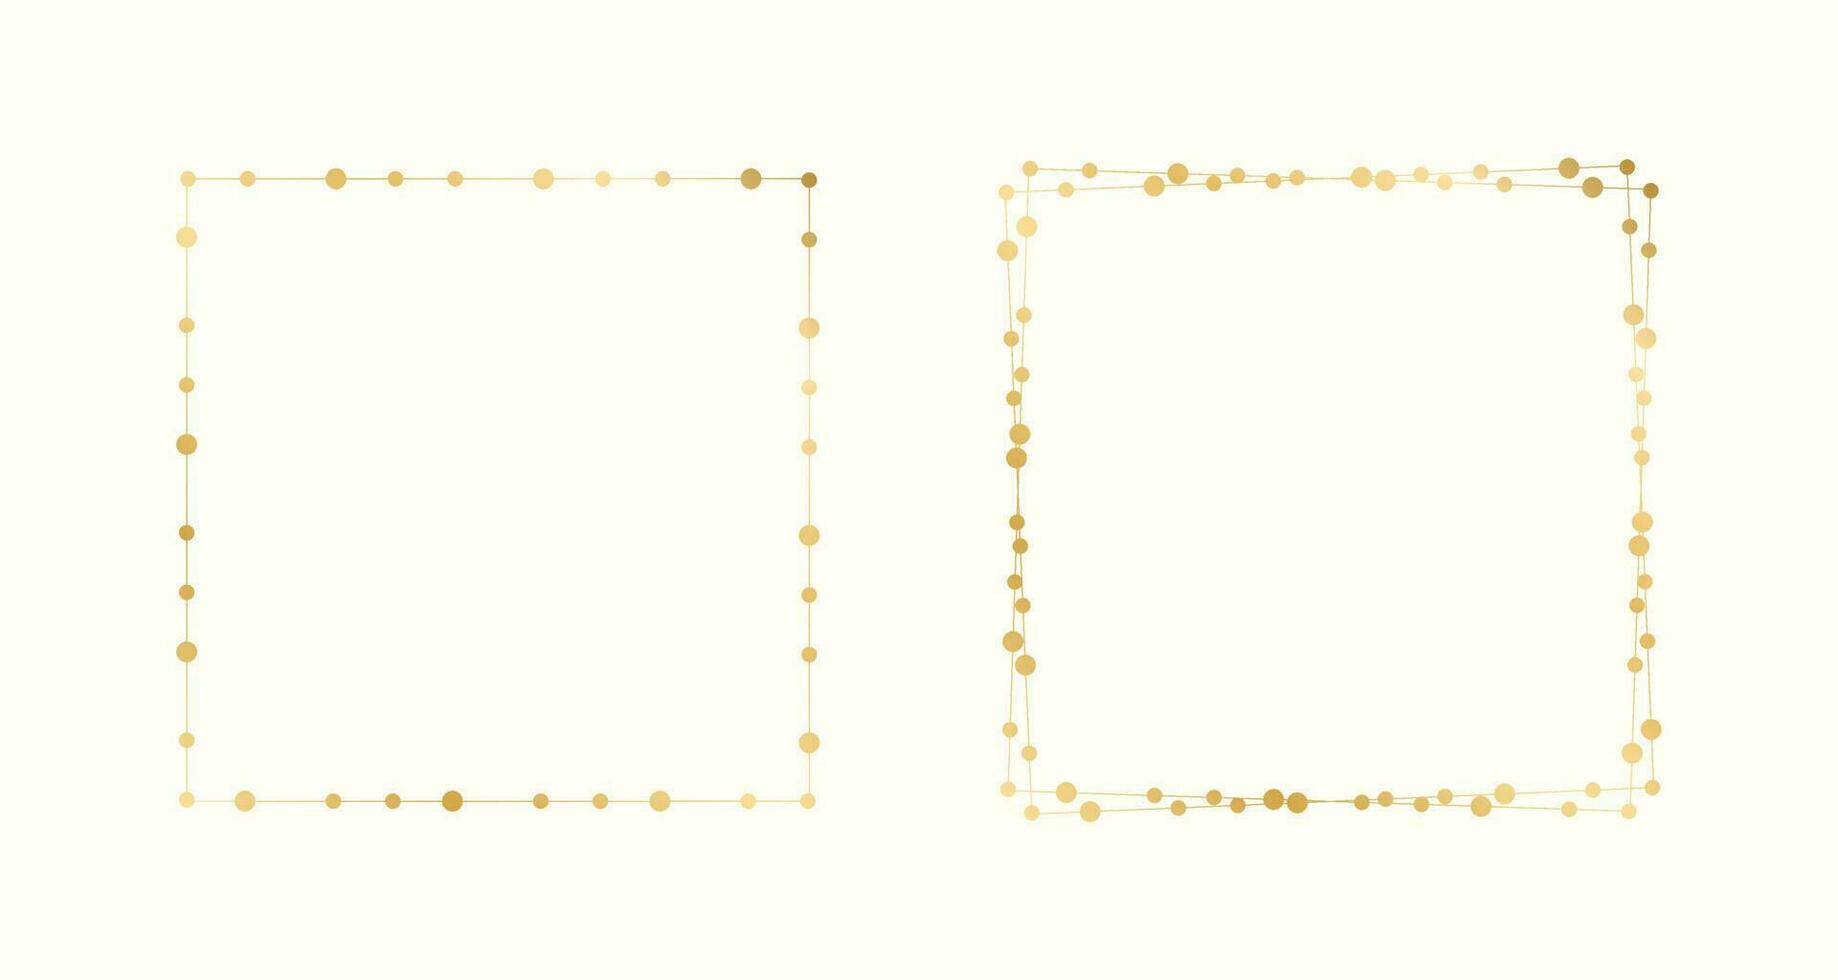 Gold Platz Weihnachten Fee Beleuchtung Rahmen Rand Satz. abstrakt golden Punkte Muster Frames Sammlung. vektor